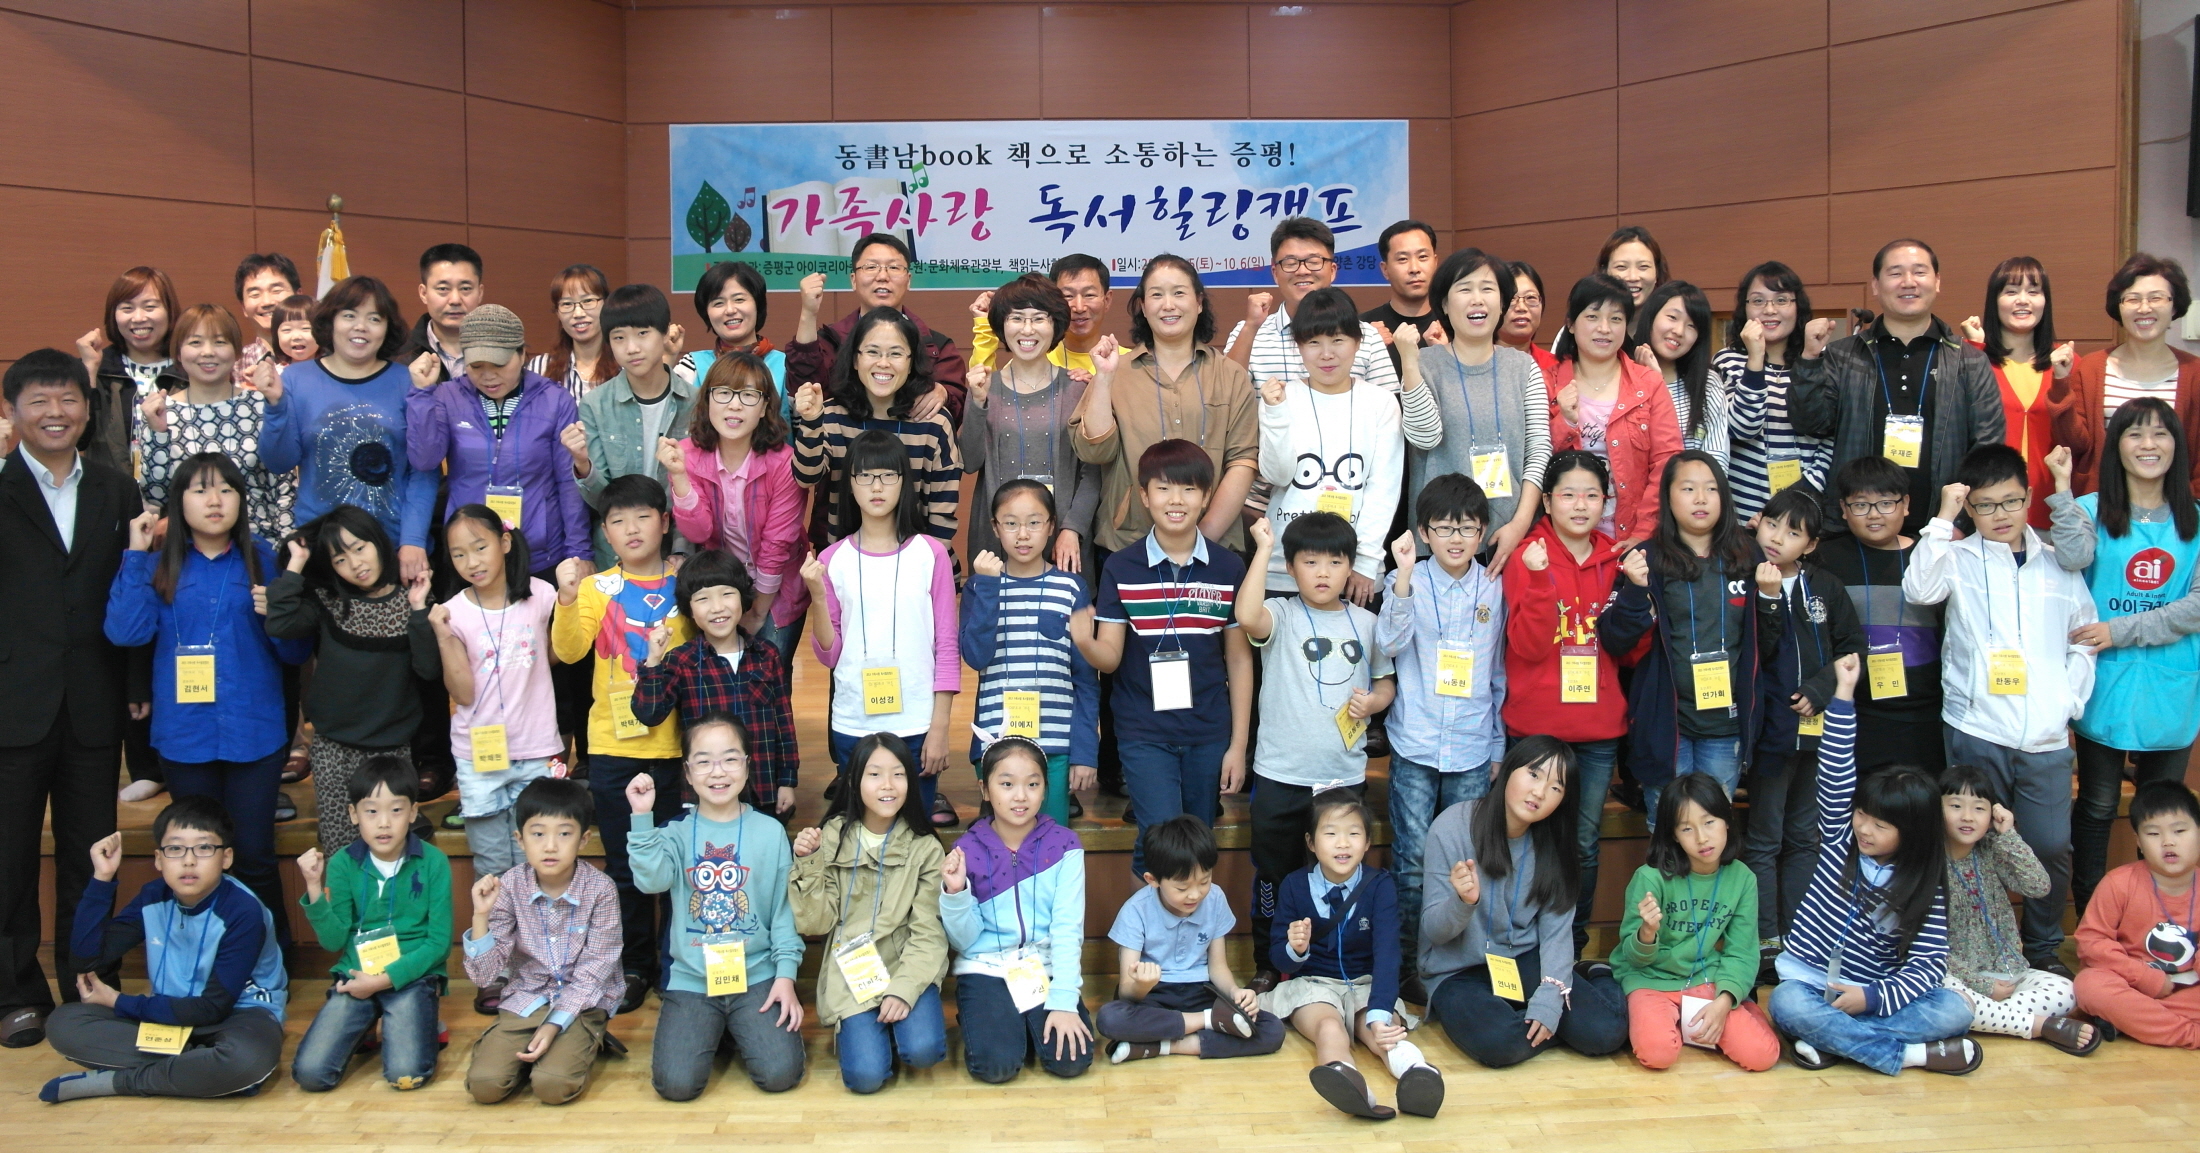 가족사랑 독서힐링캠프 개최